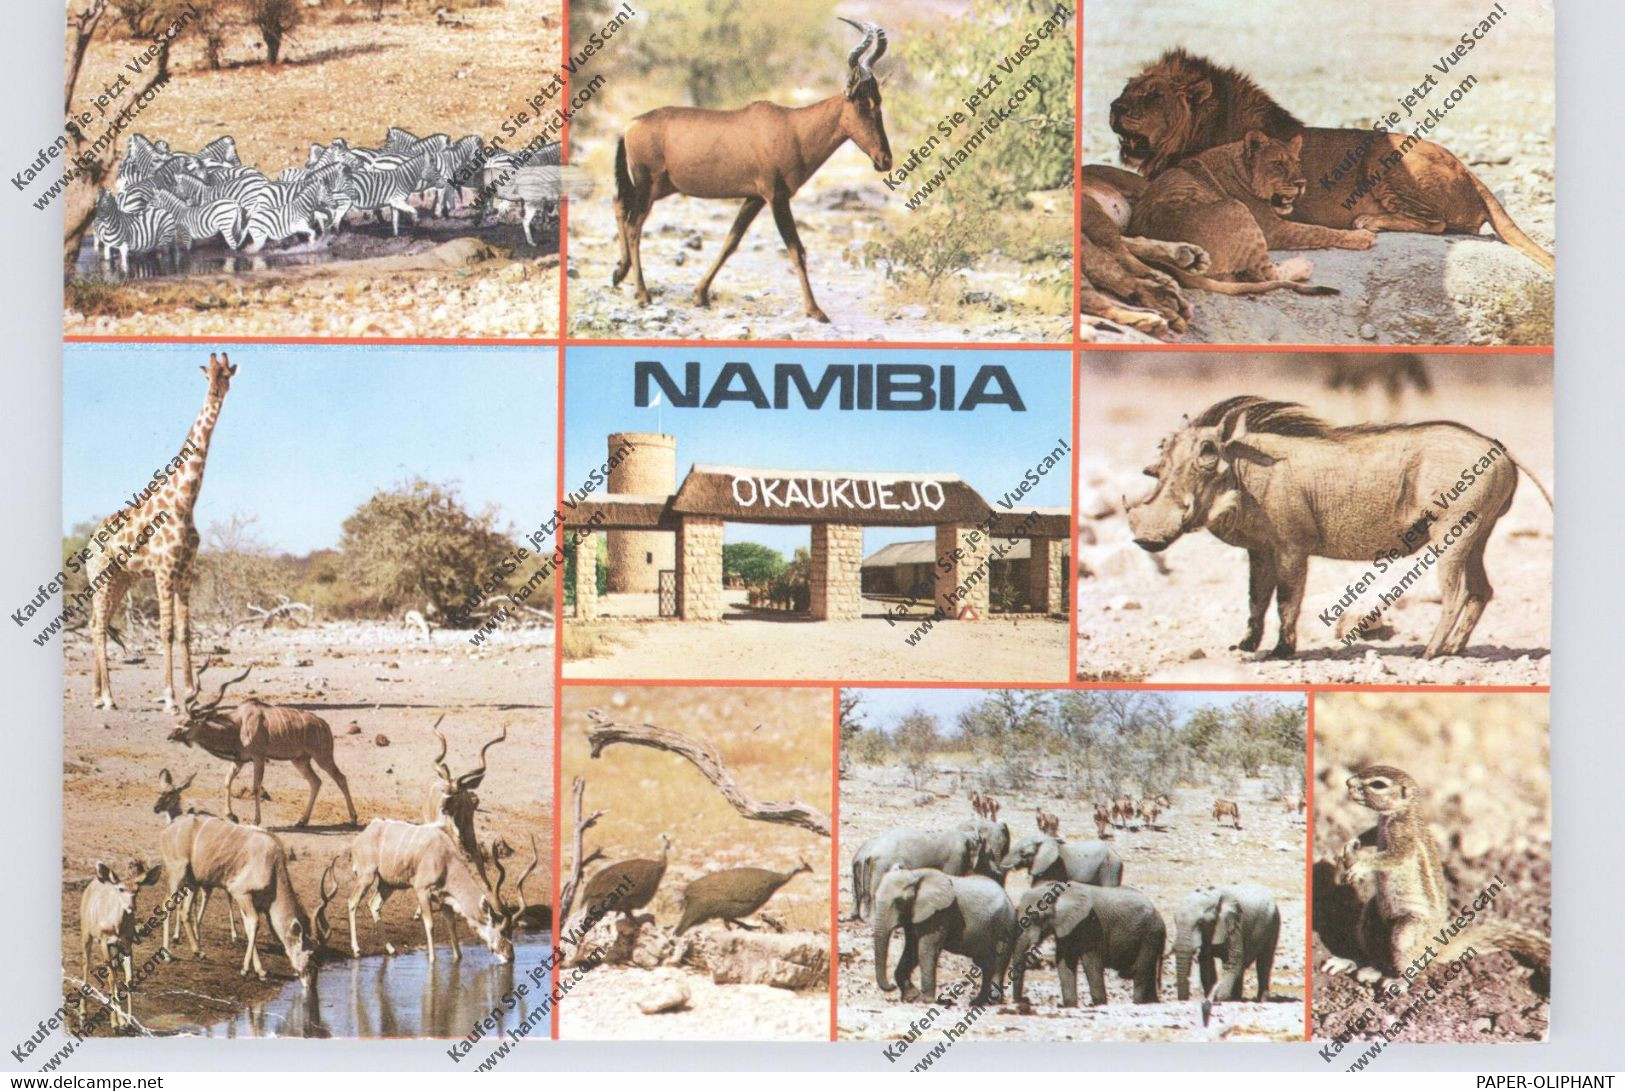 NAMIBIA - Wild Life, Etosha - Namibia